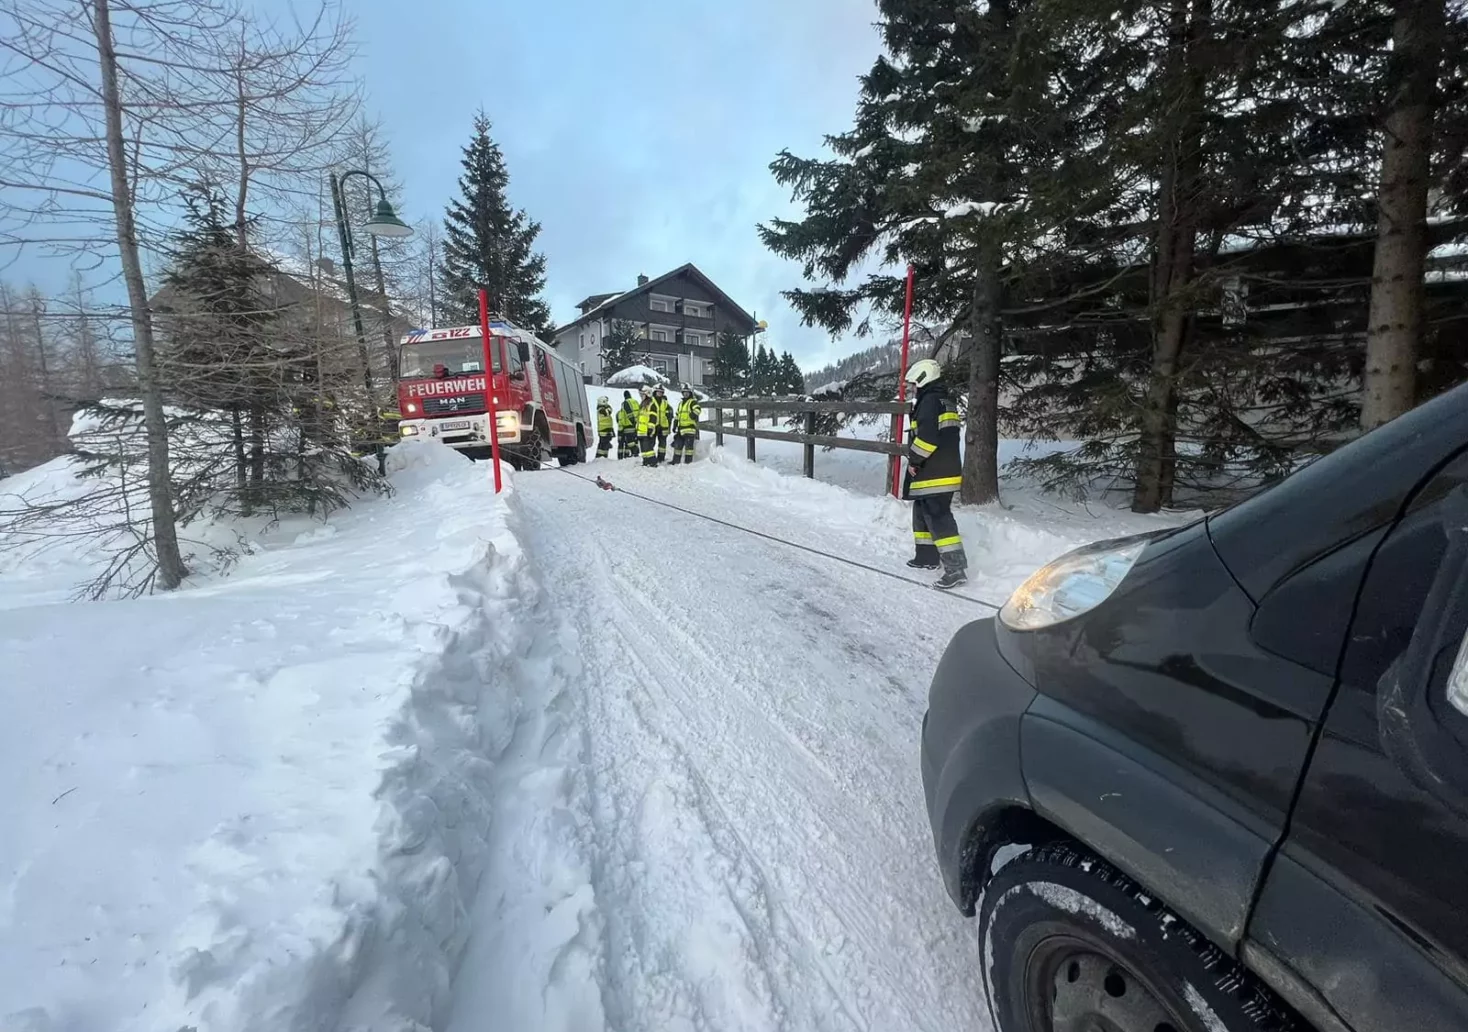 Foto in Beitrag von 5min.at: Zu sehen ist ein Feuerwehrauto und einige Feuerwehrmänner, die einen Lieferwagen, der auf der Schneefahrbahn nicht mehr weitergekommen ist, abschleppen.